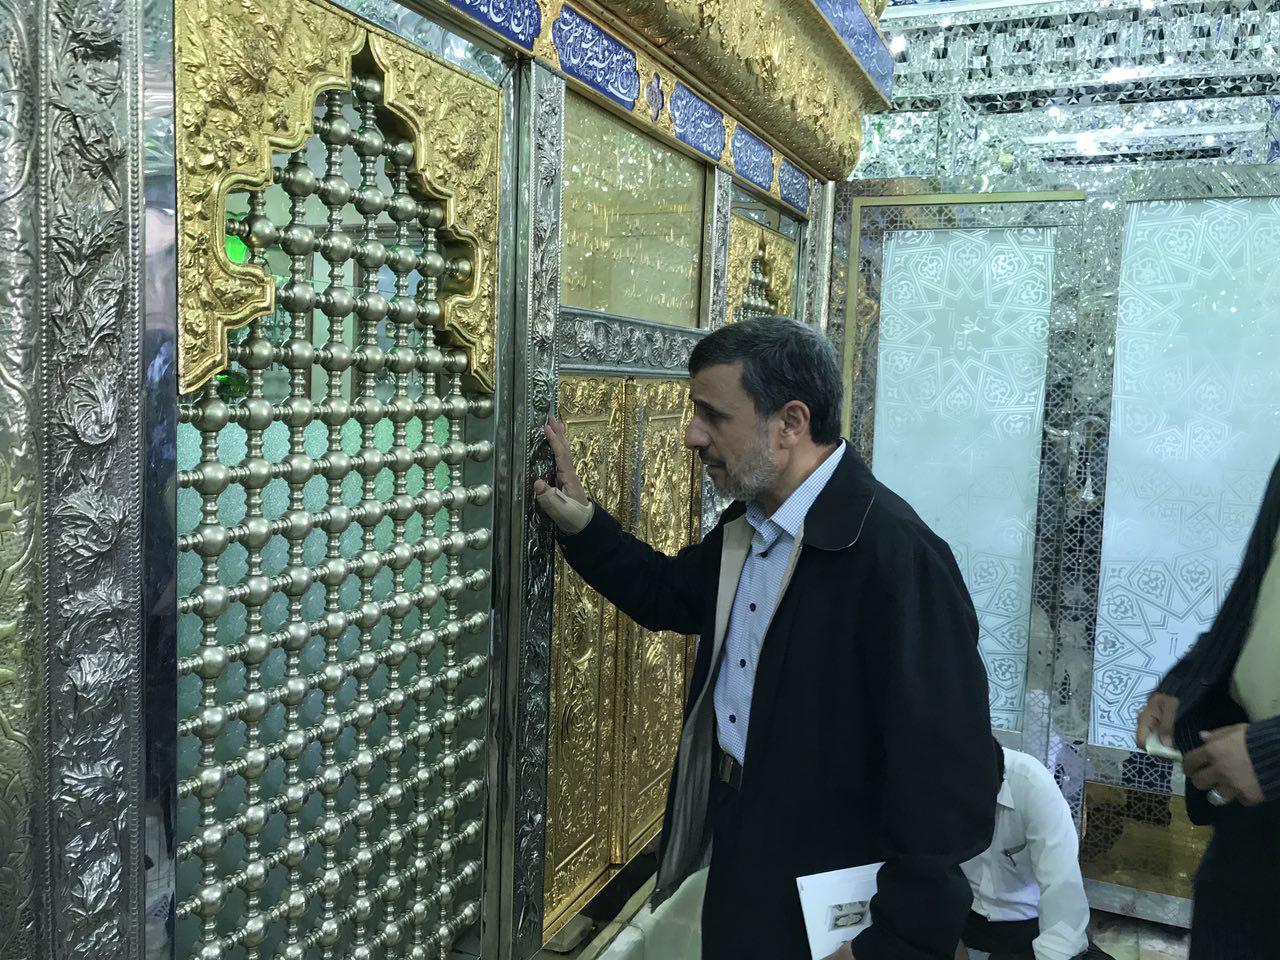 احمدی نژاد در مراسم دعای عرفه امامزاده زید+ عکس